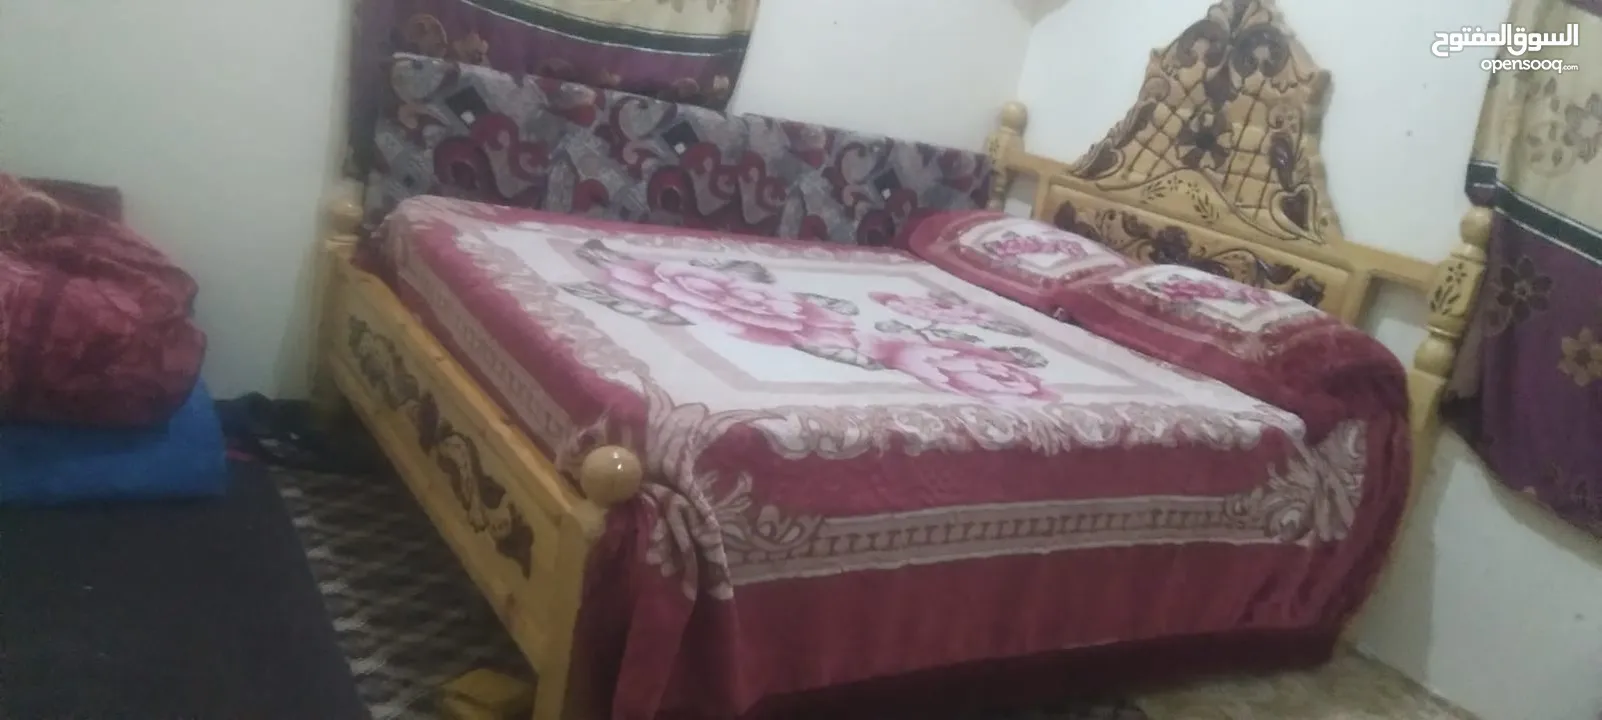 غرفة نوم متكونة من سرير ودولاب ب سعر 140 الف عرطة العرطات الحقو العرض